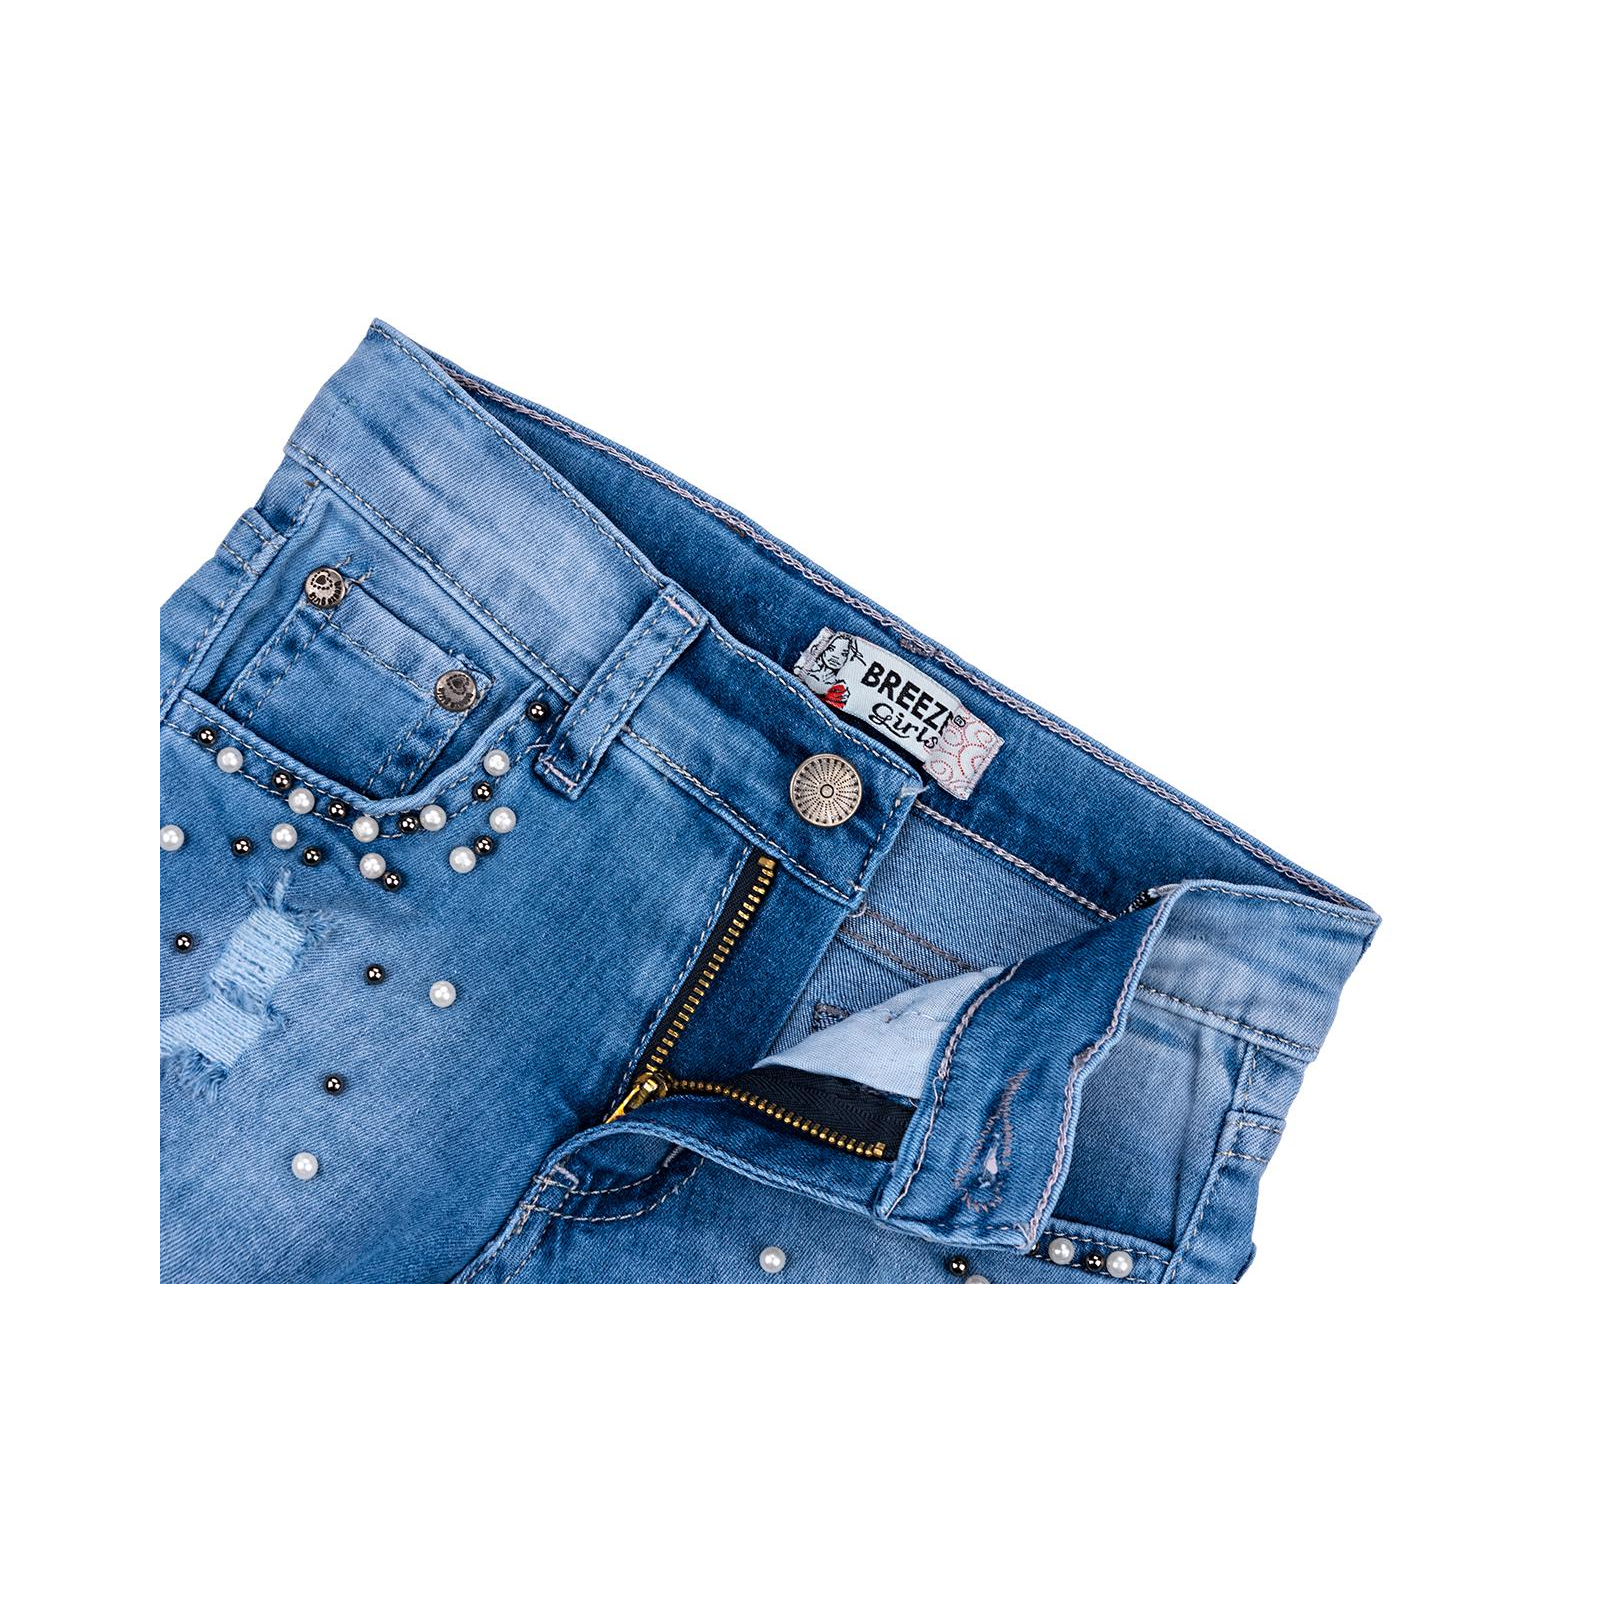 Шорты Breeze джинсовые с бусинами (20139-140G-blue) изображение 3